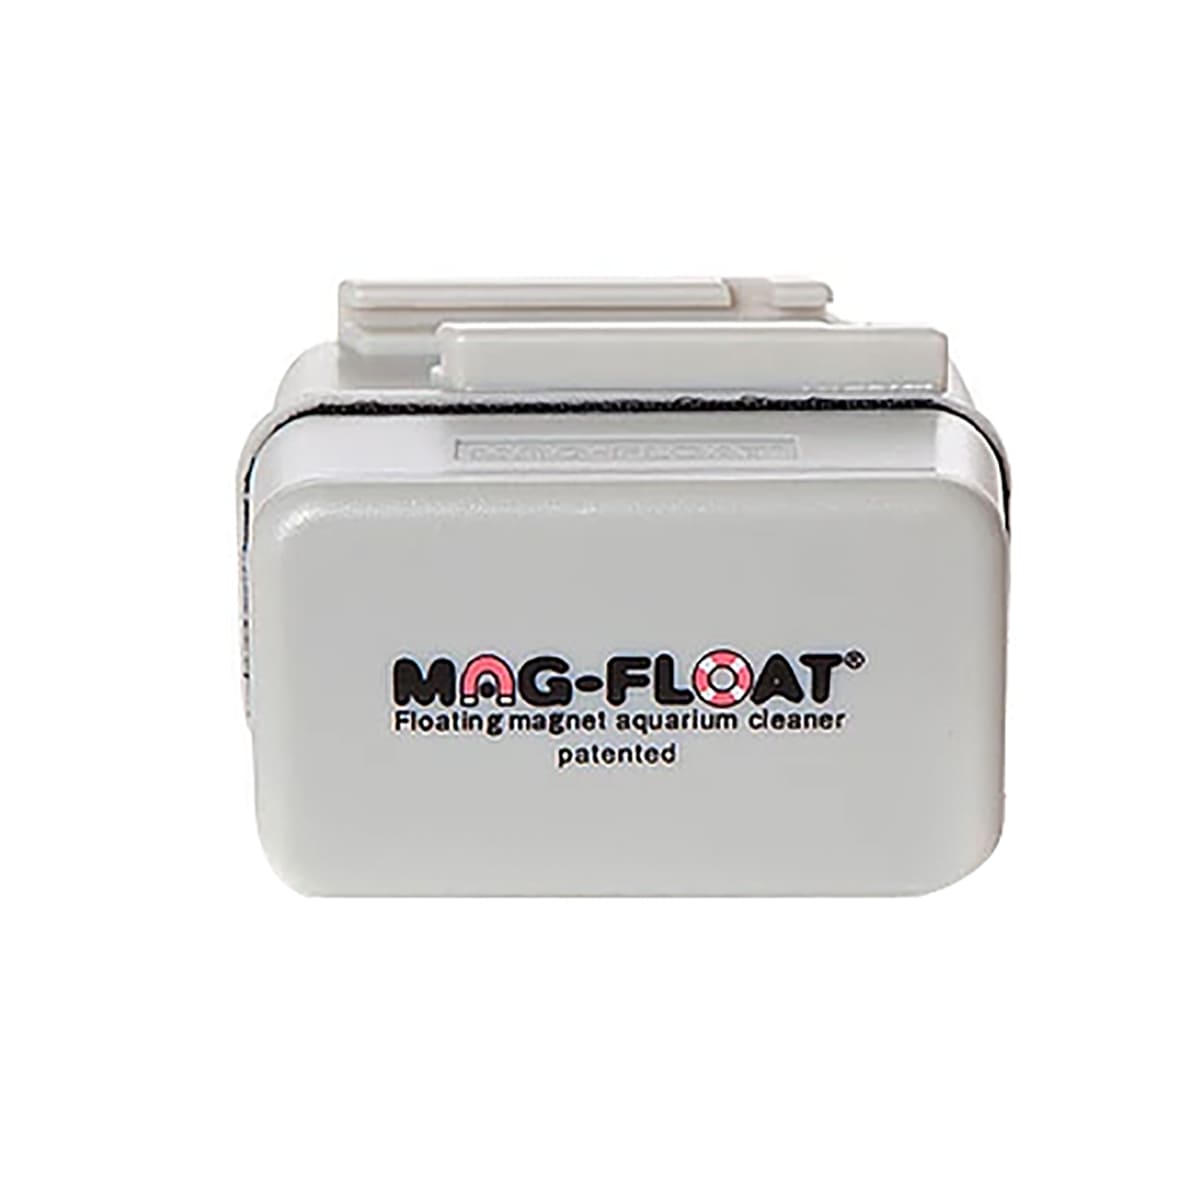 Limpador Magnético Mag-float ( Small ) - Vidros de até 5mm